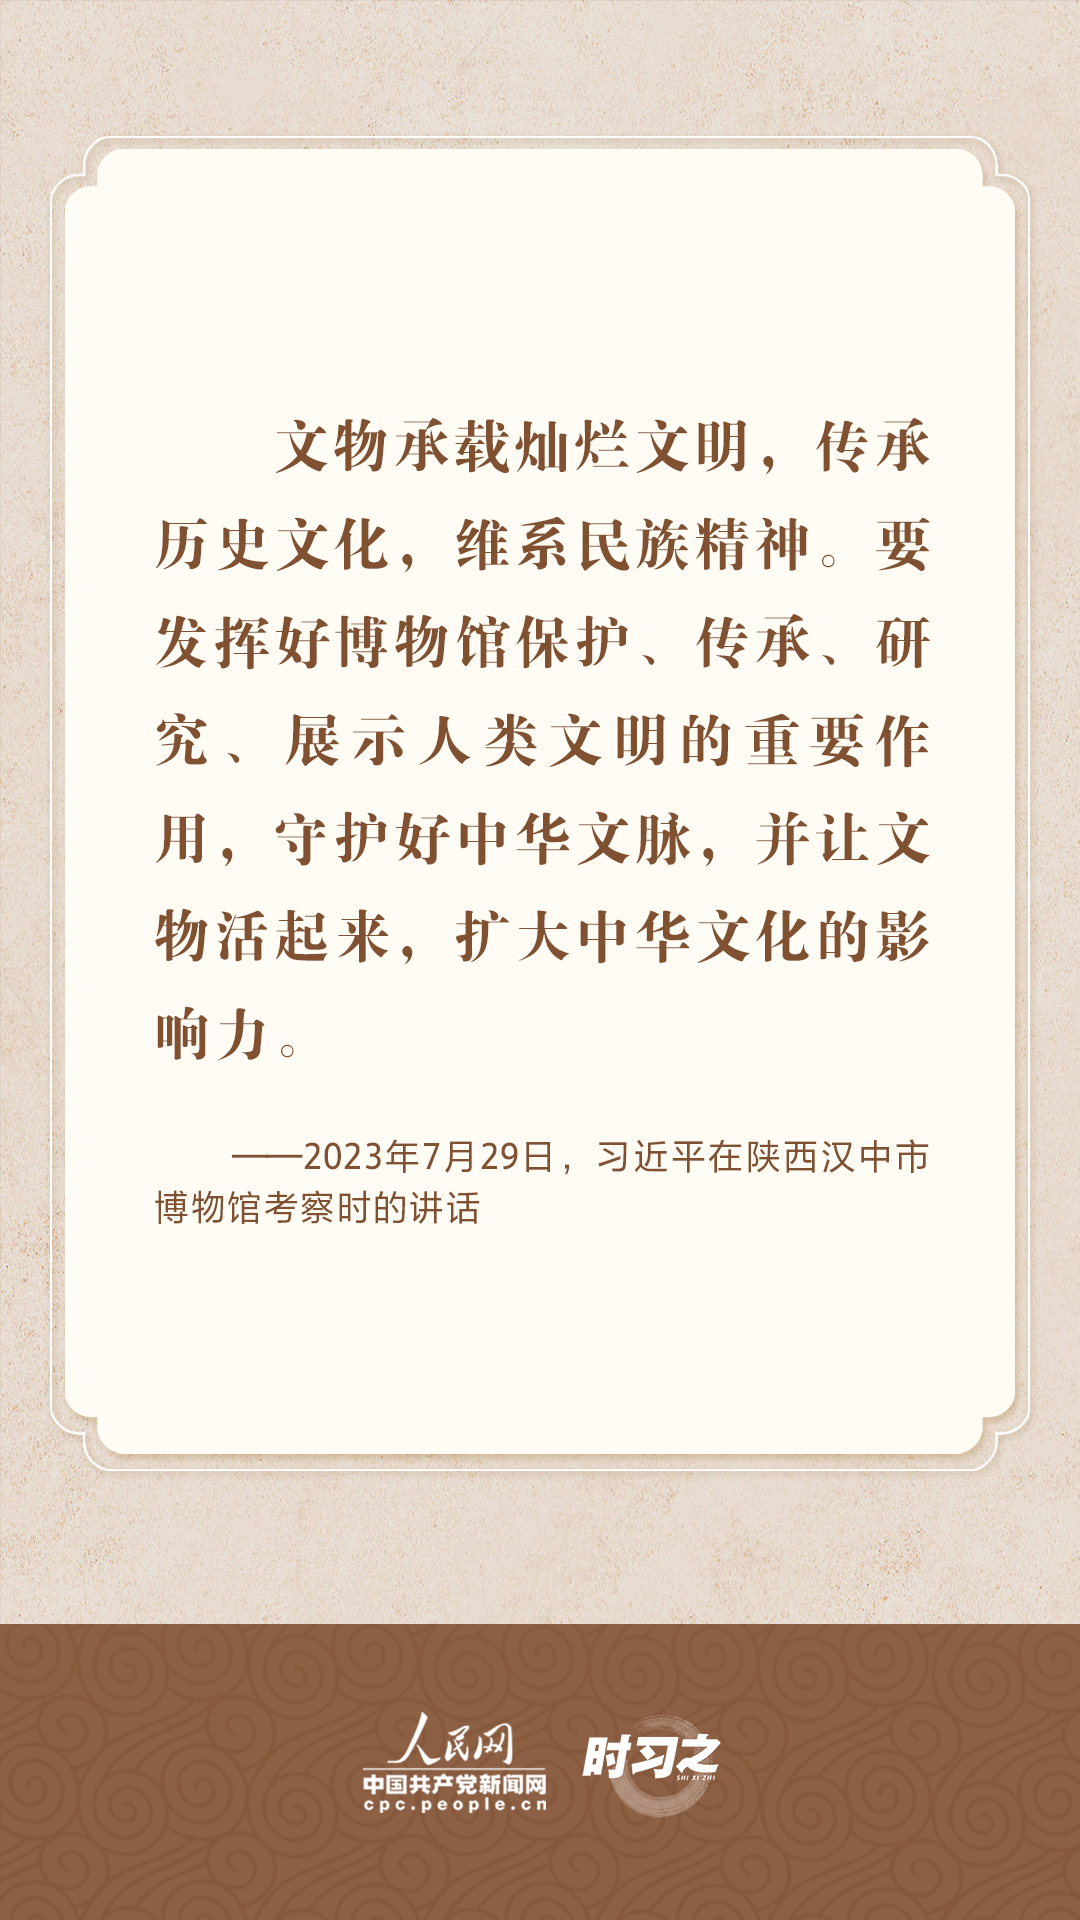 守護好中華文脈 習近平心系中華優秀傳統文化保護傳承